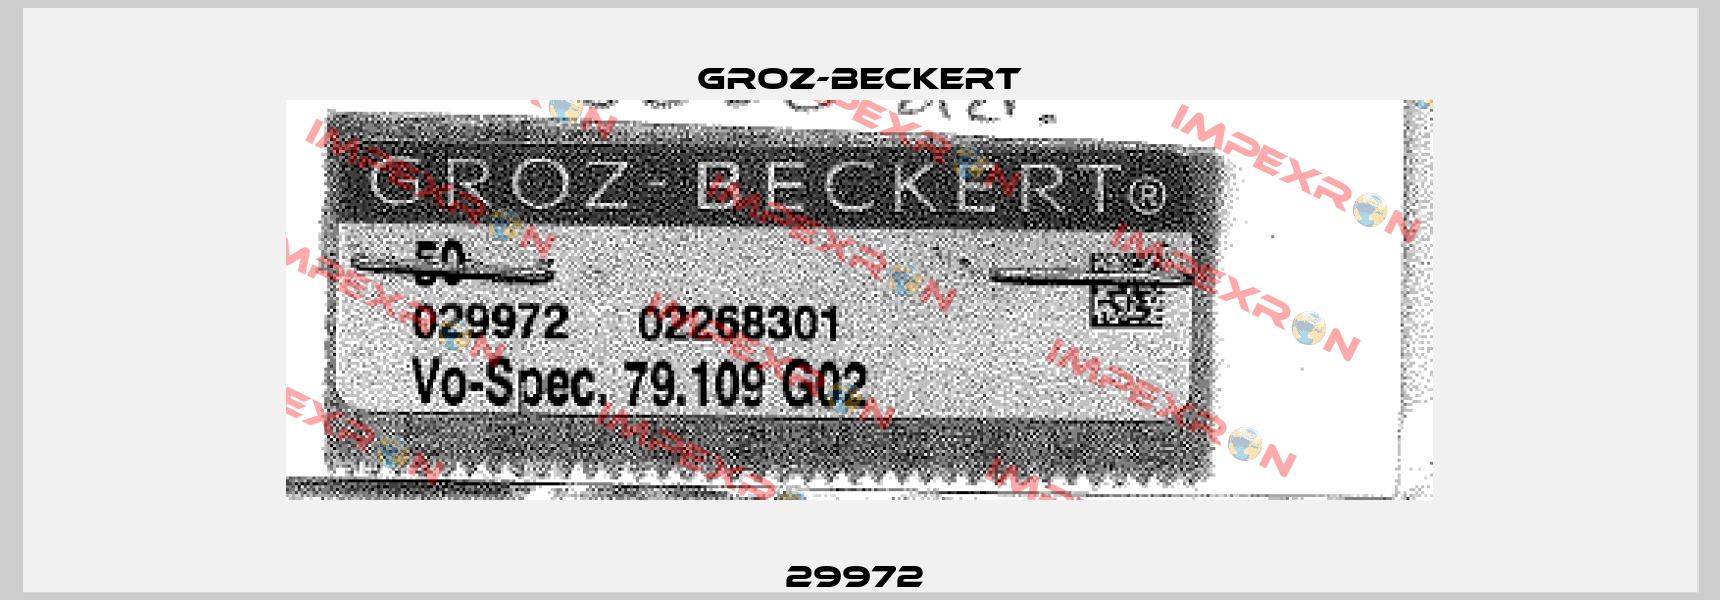 29972  Groz-Beckert